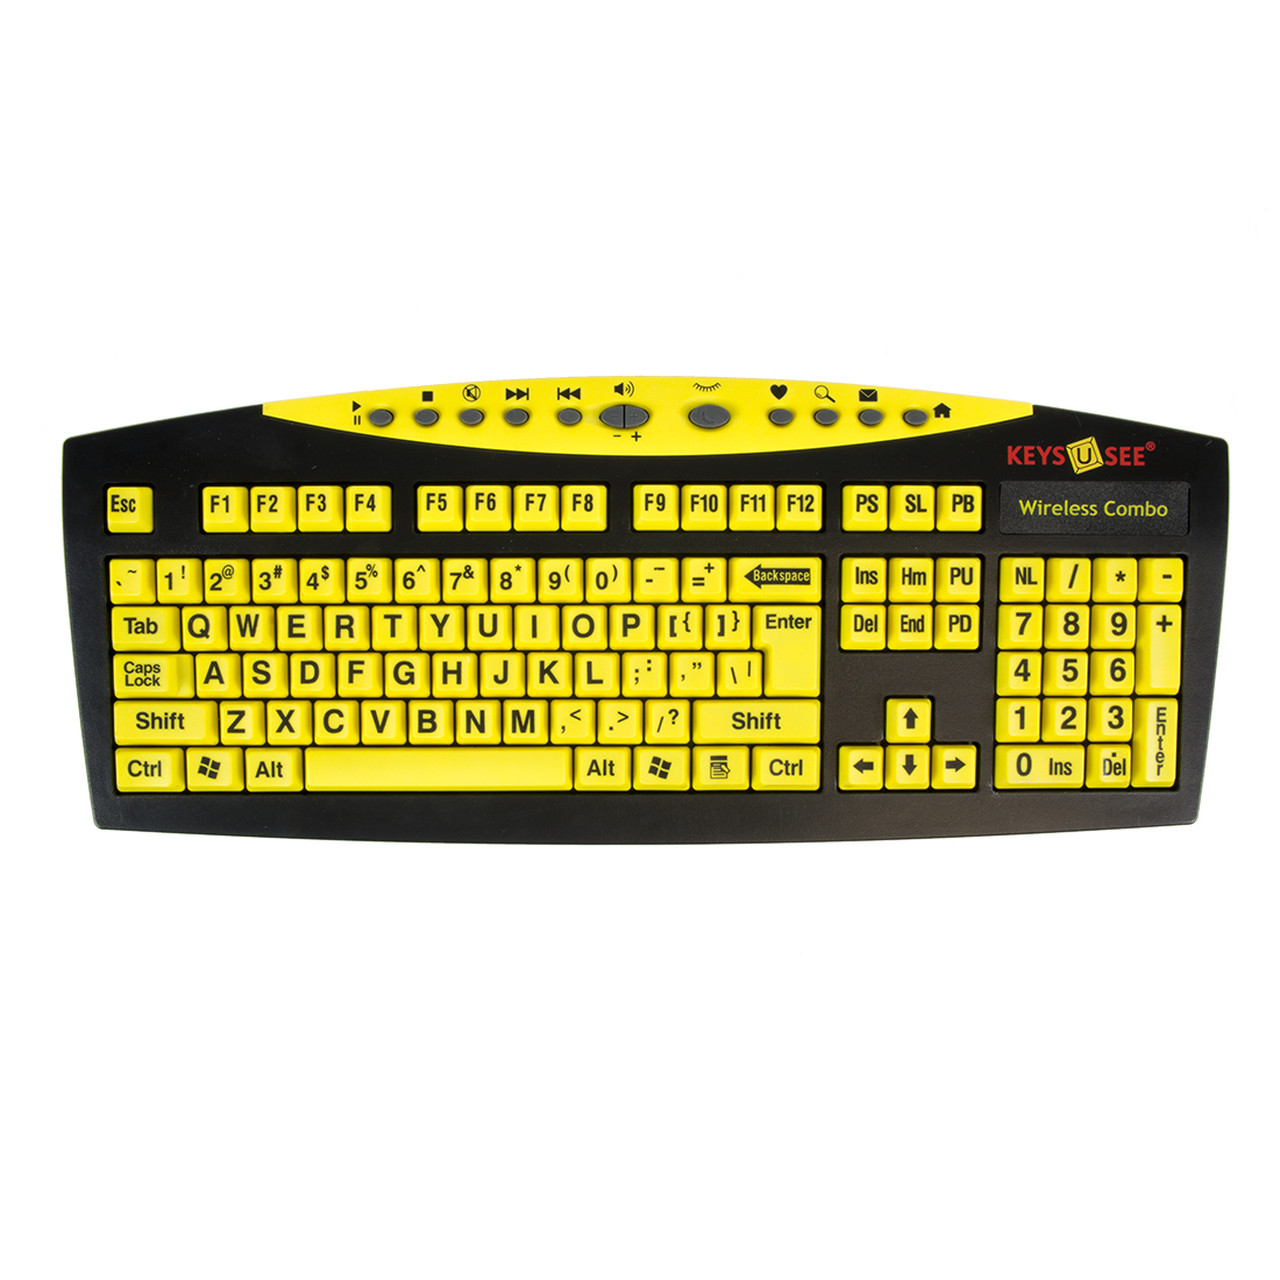 Fluisteren Rechtsaf melodie Grootletter toetsenbord en muis Keys-U-See zwart op geel draadloos